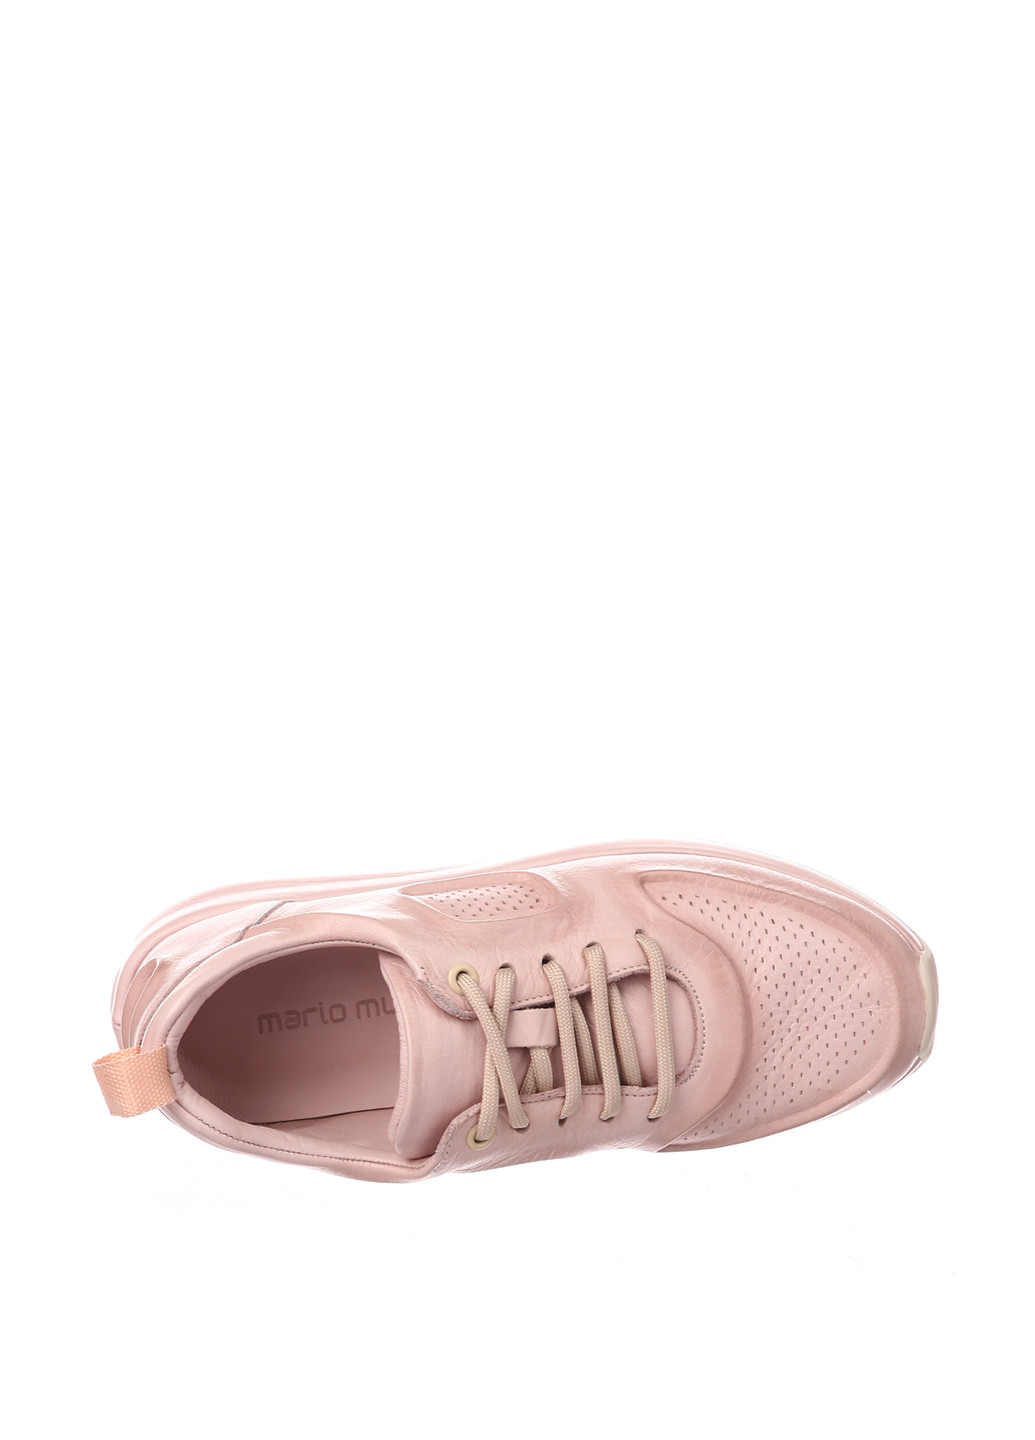 Светло-розовые демисезонные кроссовки Mario Muzi